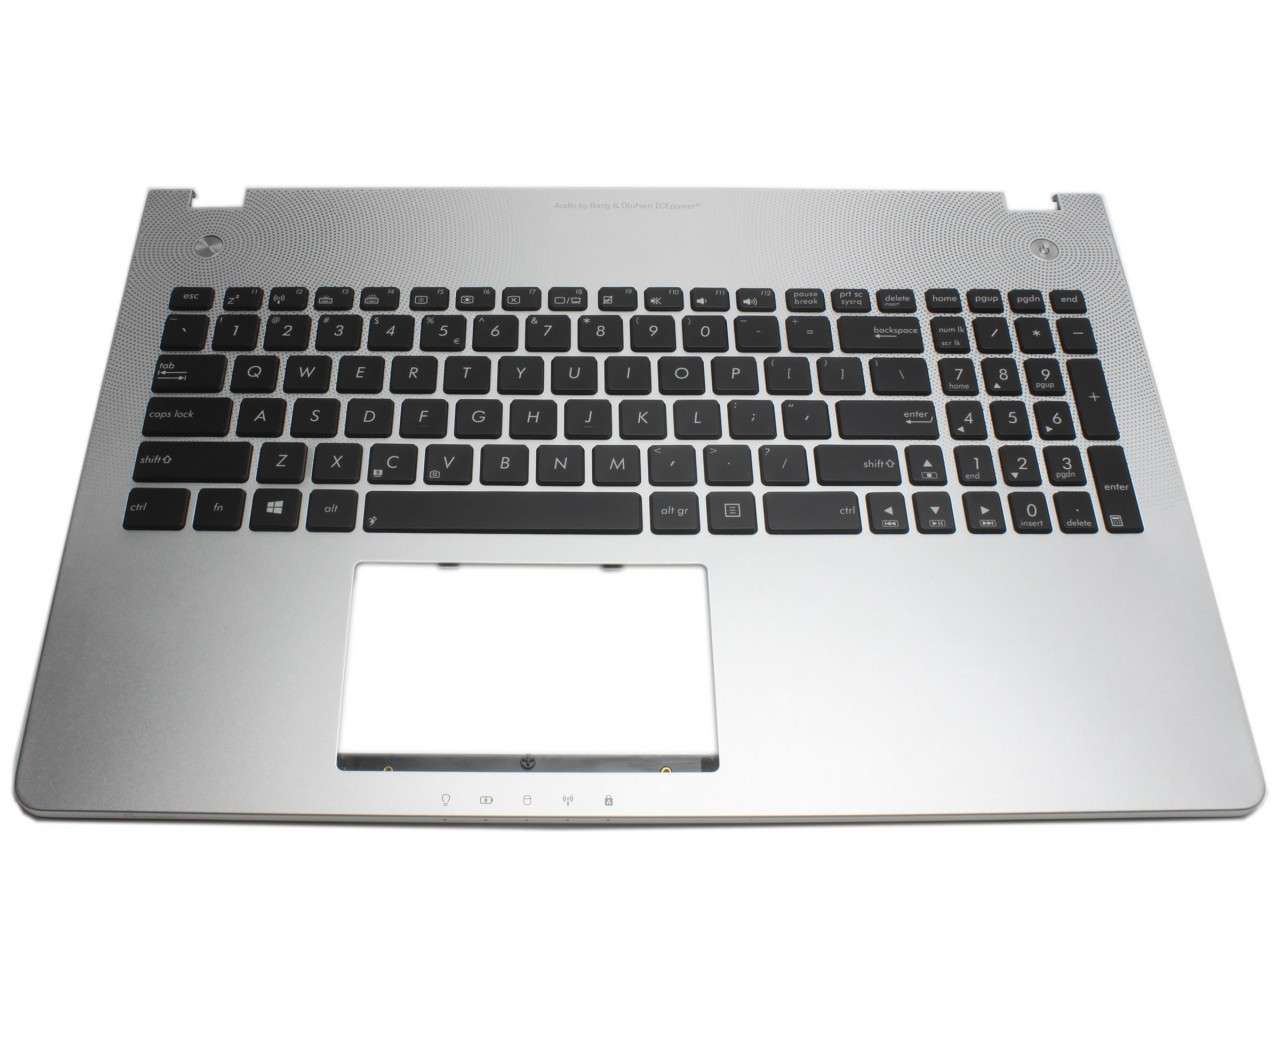 Tastatura Asus N56VB neagra cu Palmrest argintiu iluminata backlit fara Touchpad